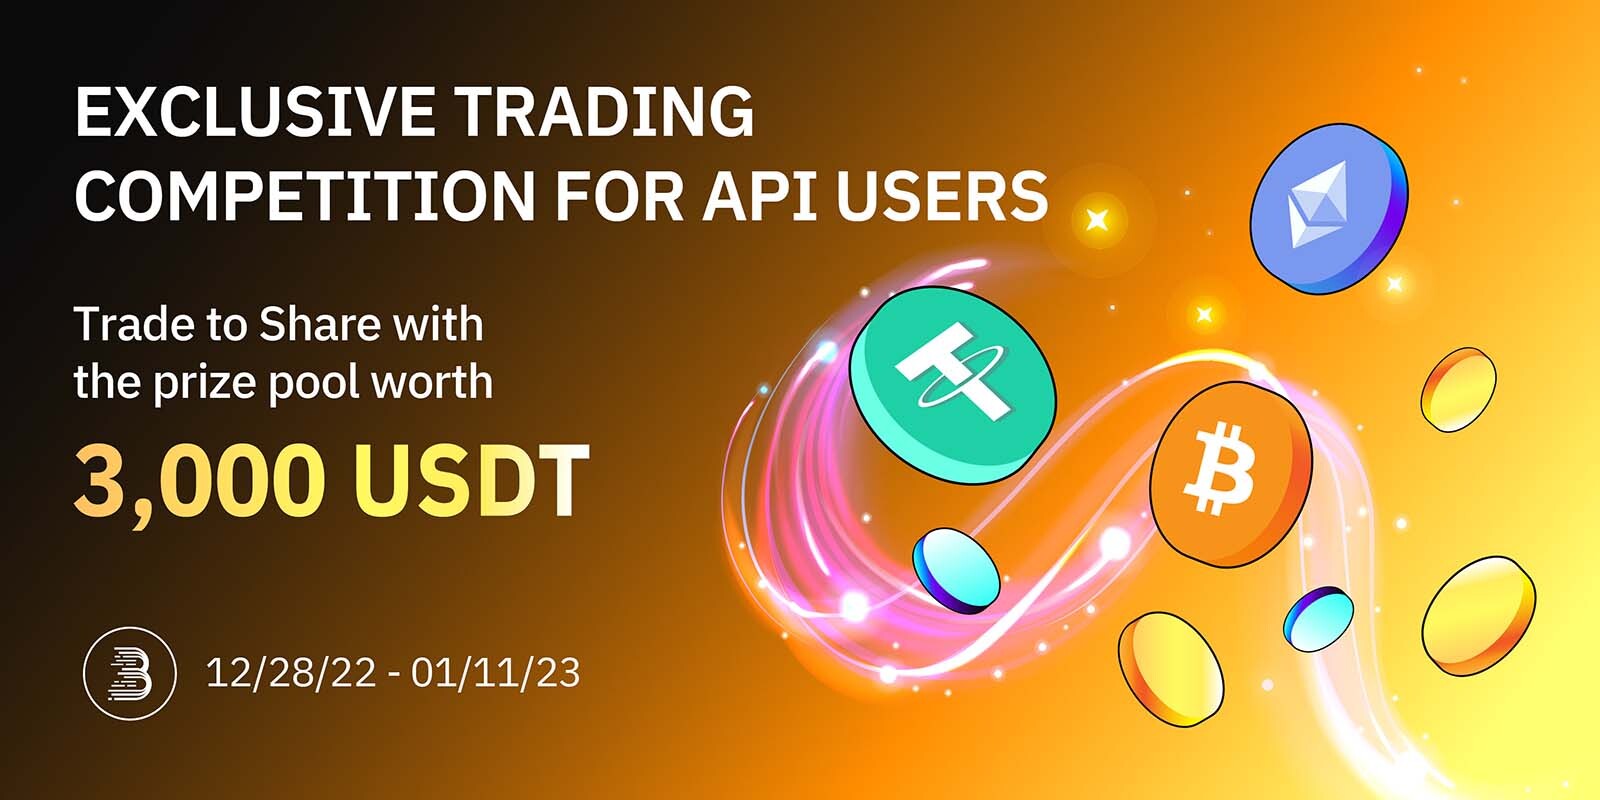 Competition_for_API_Users-_V2_margain_trading_EN.jpg